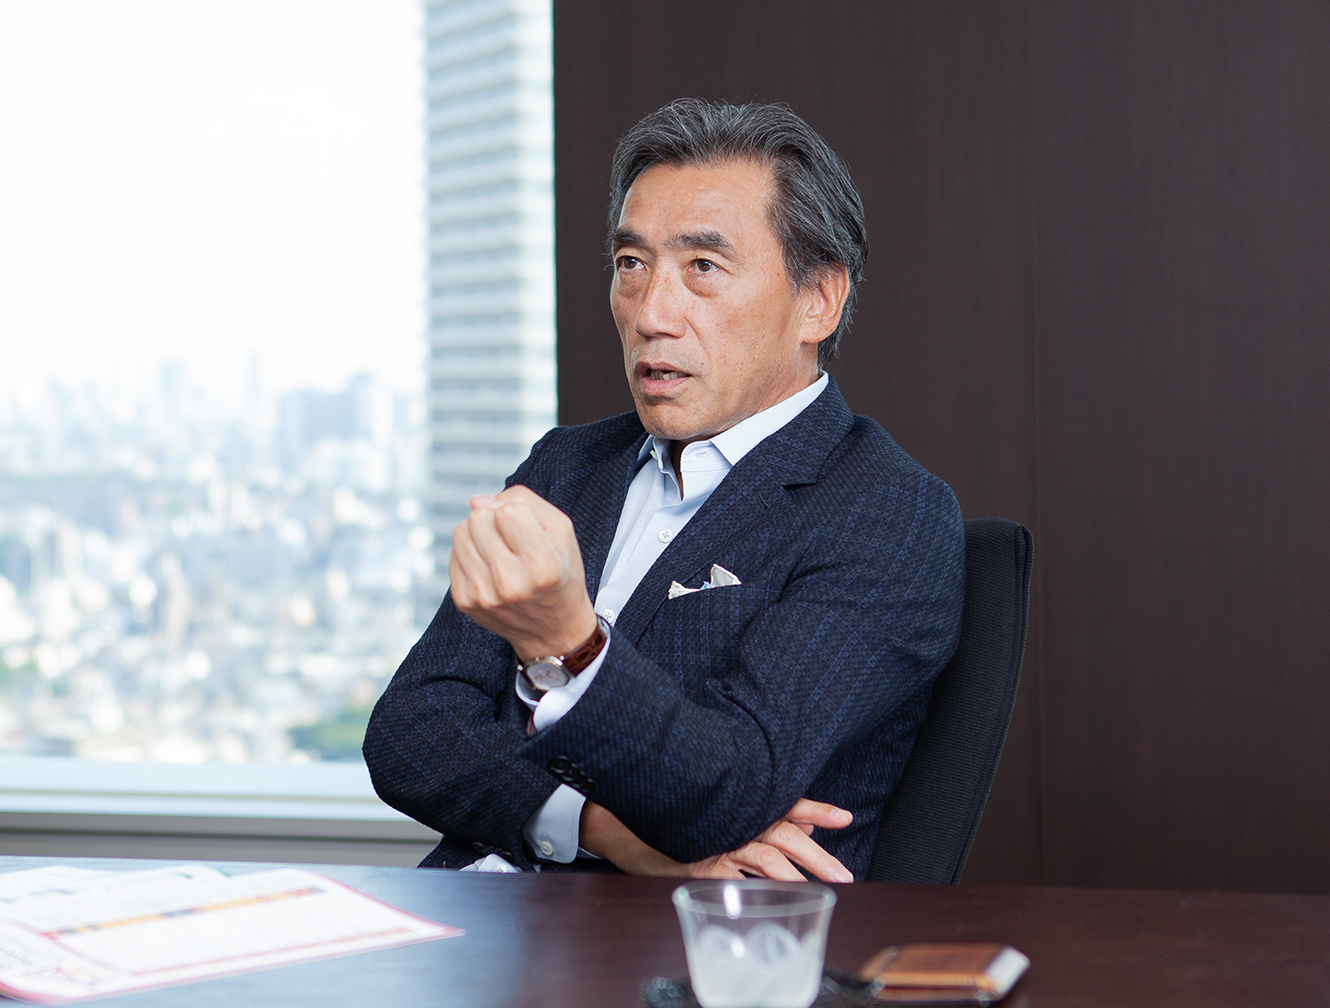 澤田 ファミマ ユニクロ社長の座を蹴った男が仕掛ける「ファミマ」大改革の全貌(MAG2 NEWS)